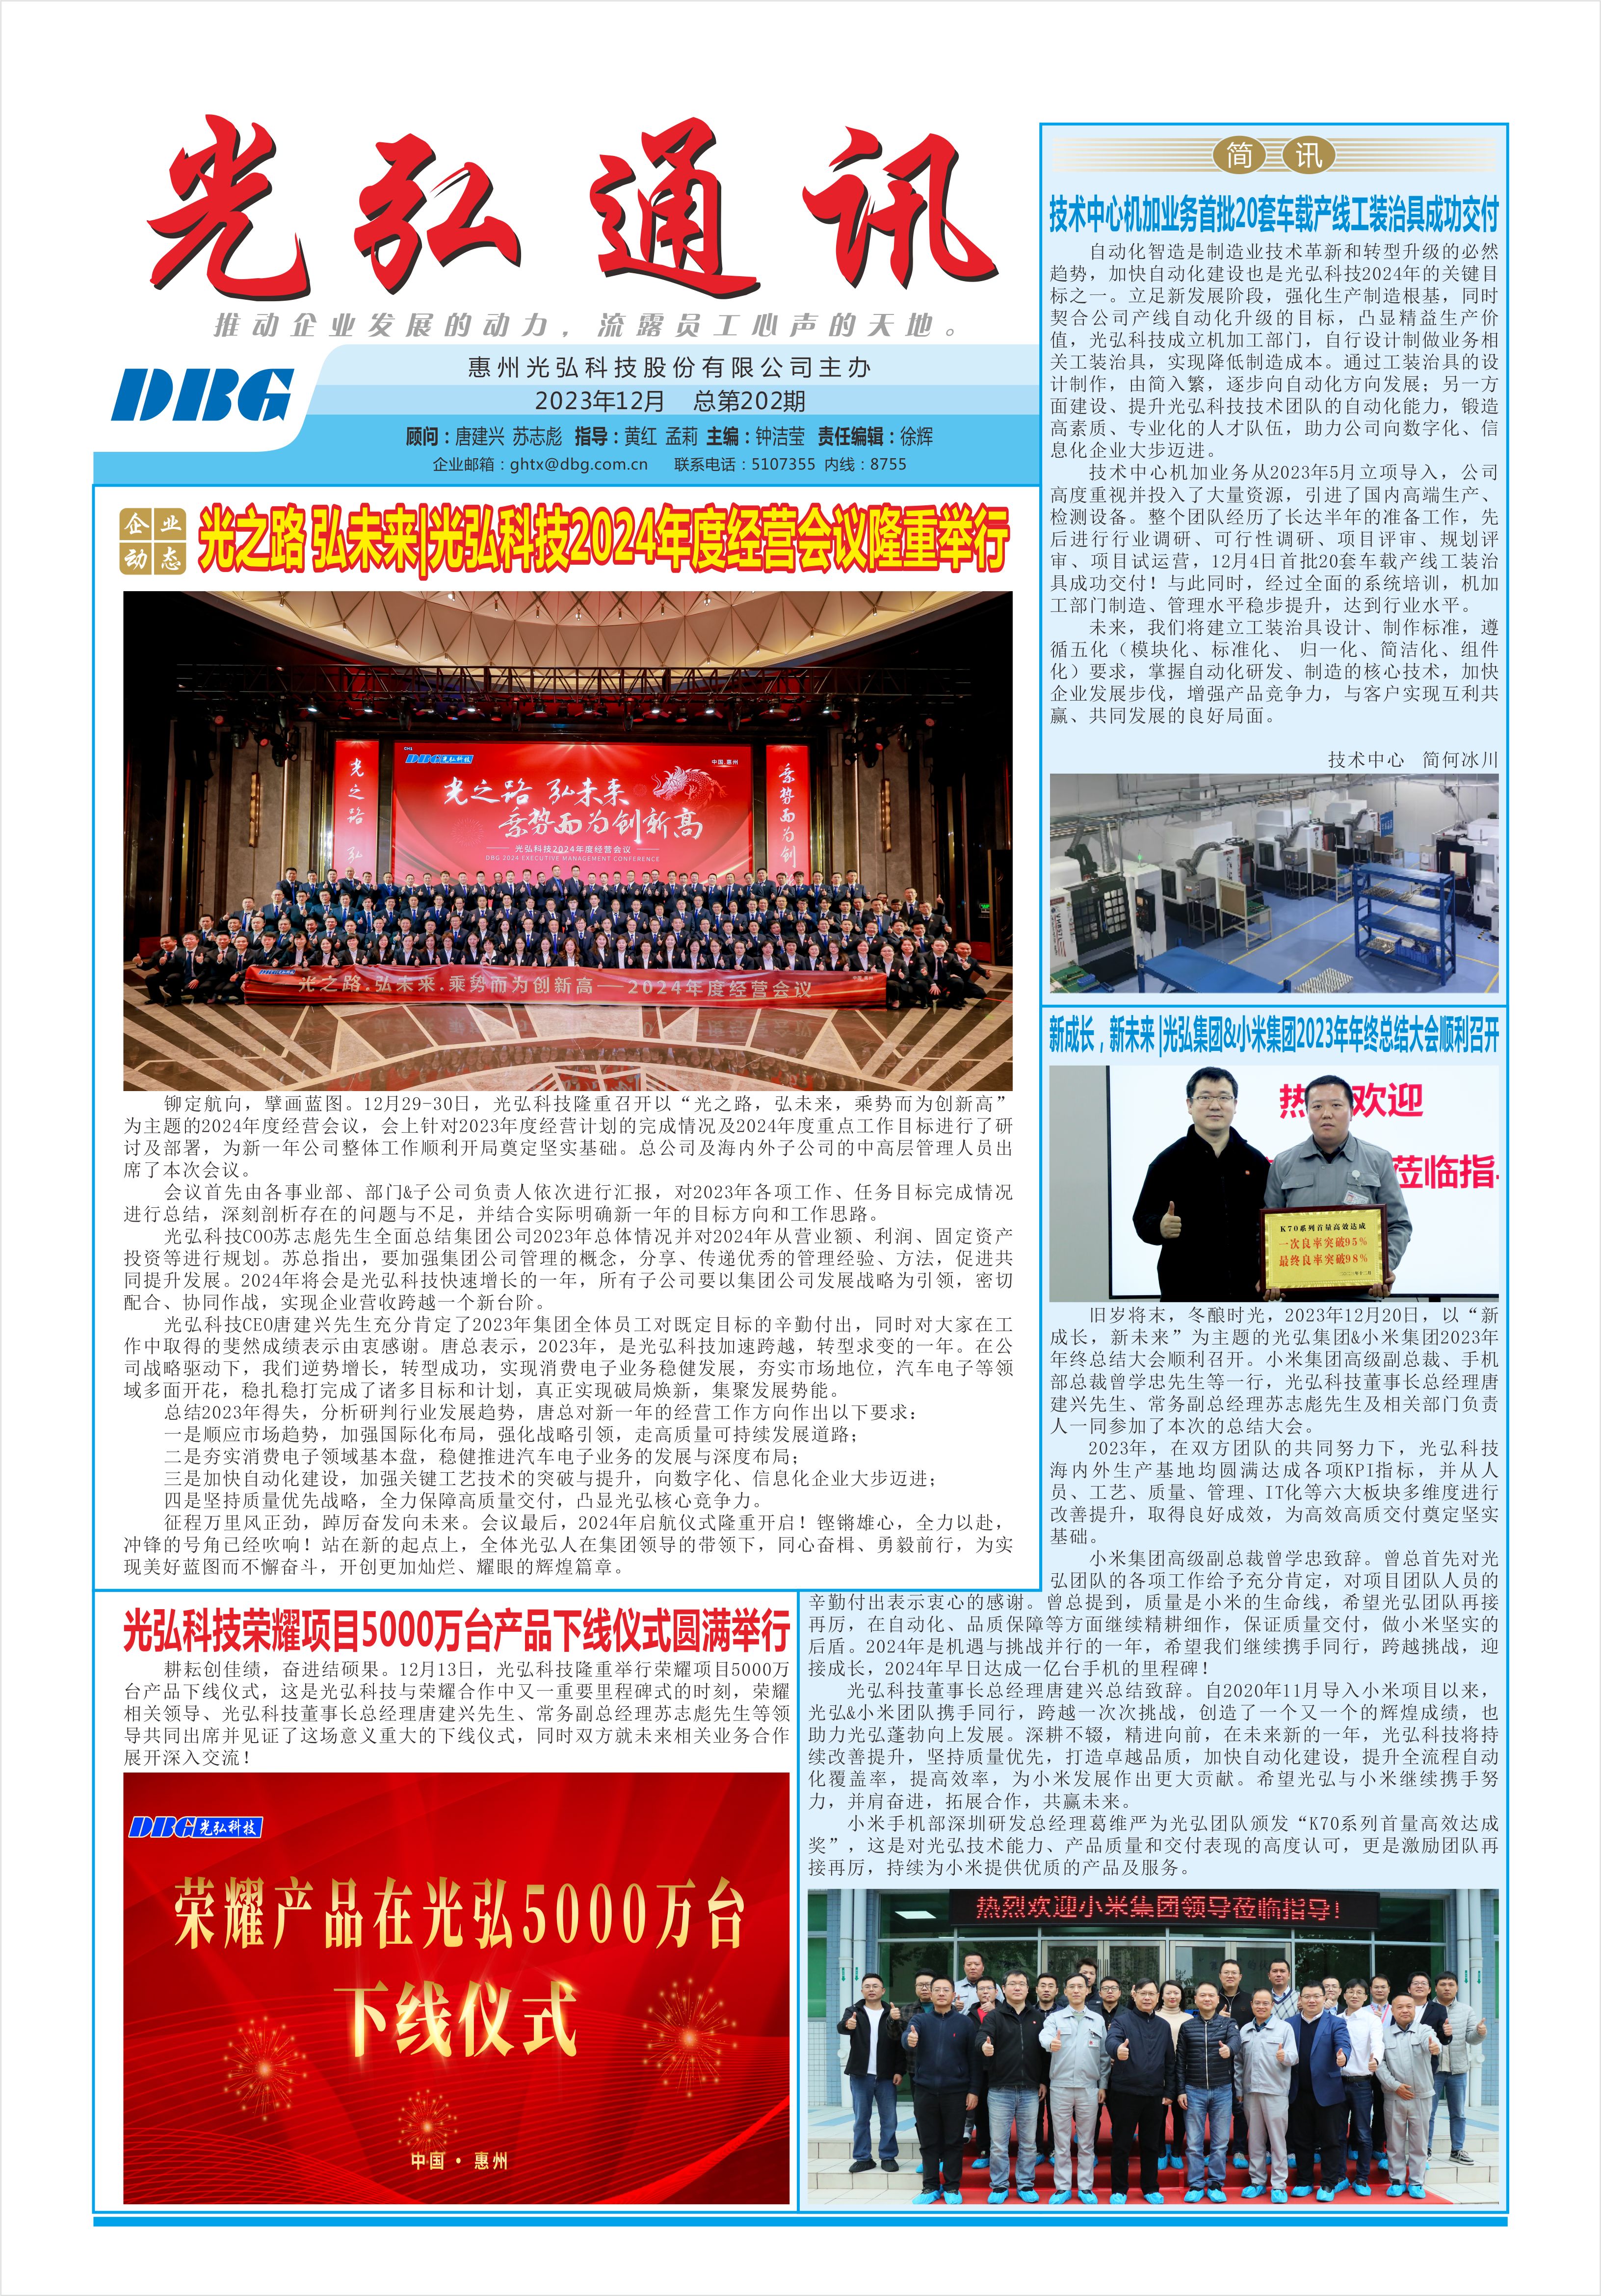 光弘通讯——202期 1 - DBG press No.202